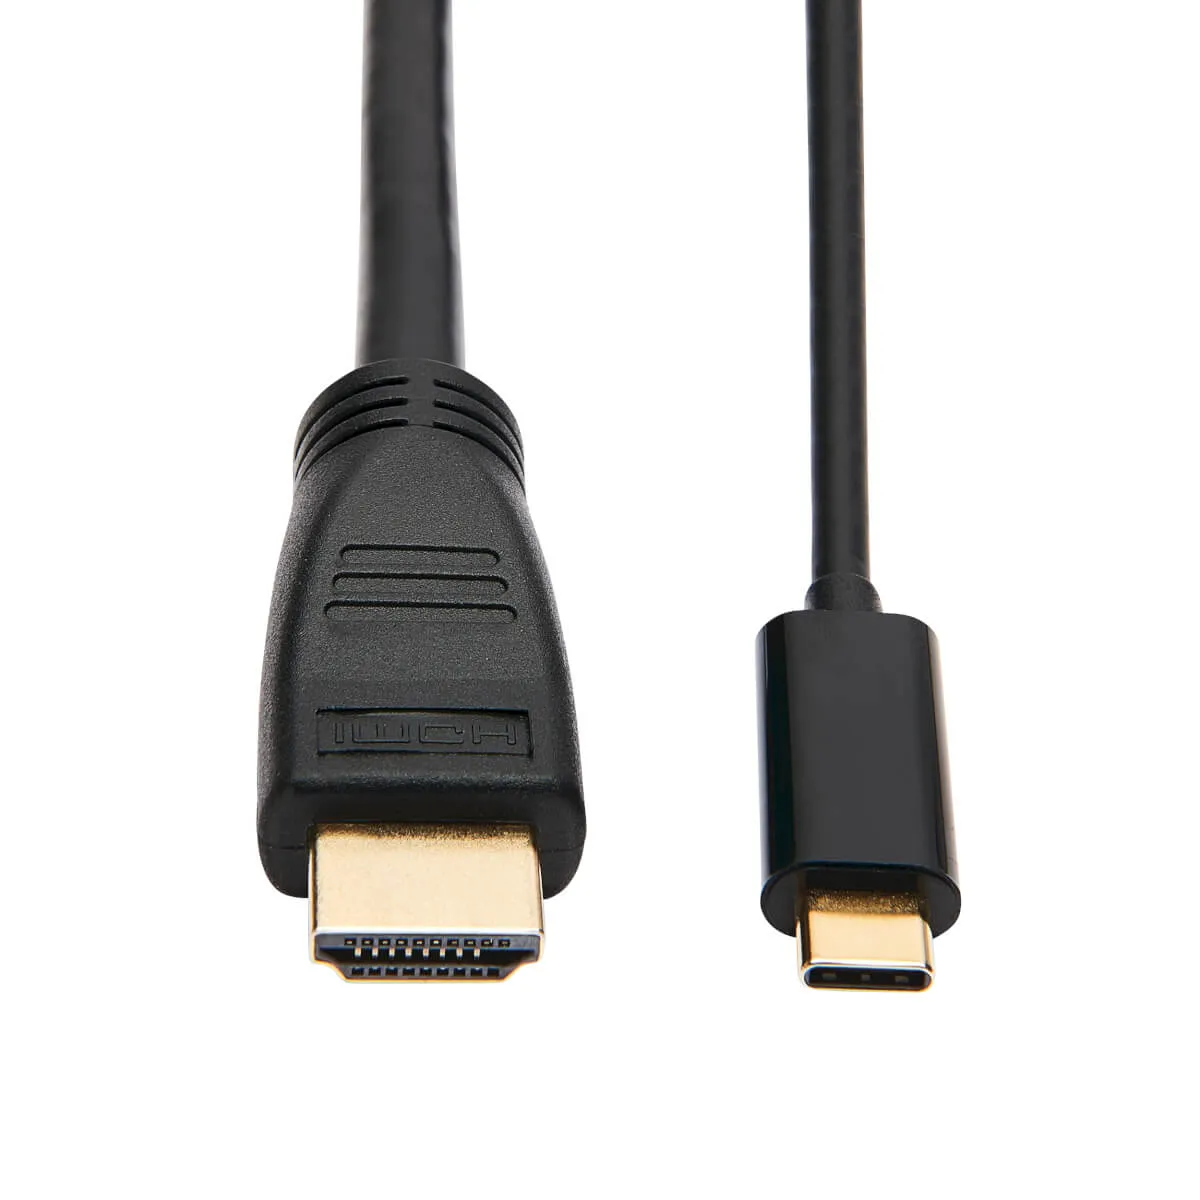 Vente EATON TRIPPLITE USB-C to HDMI Active Adapter Cable Tripp Lite au meilleur prix - visuel 6